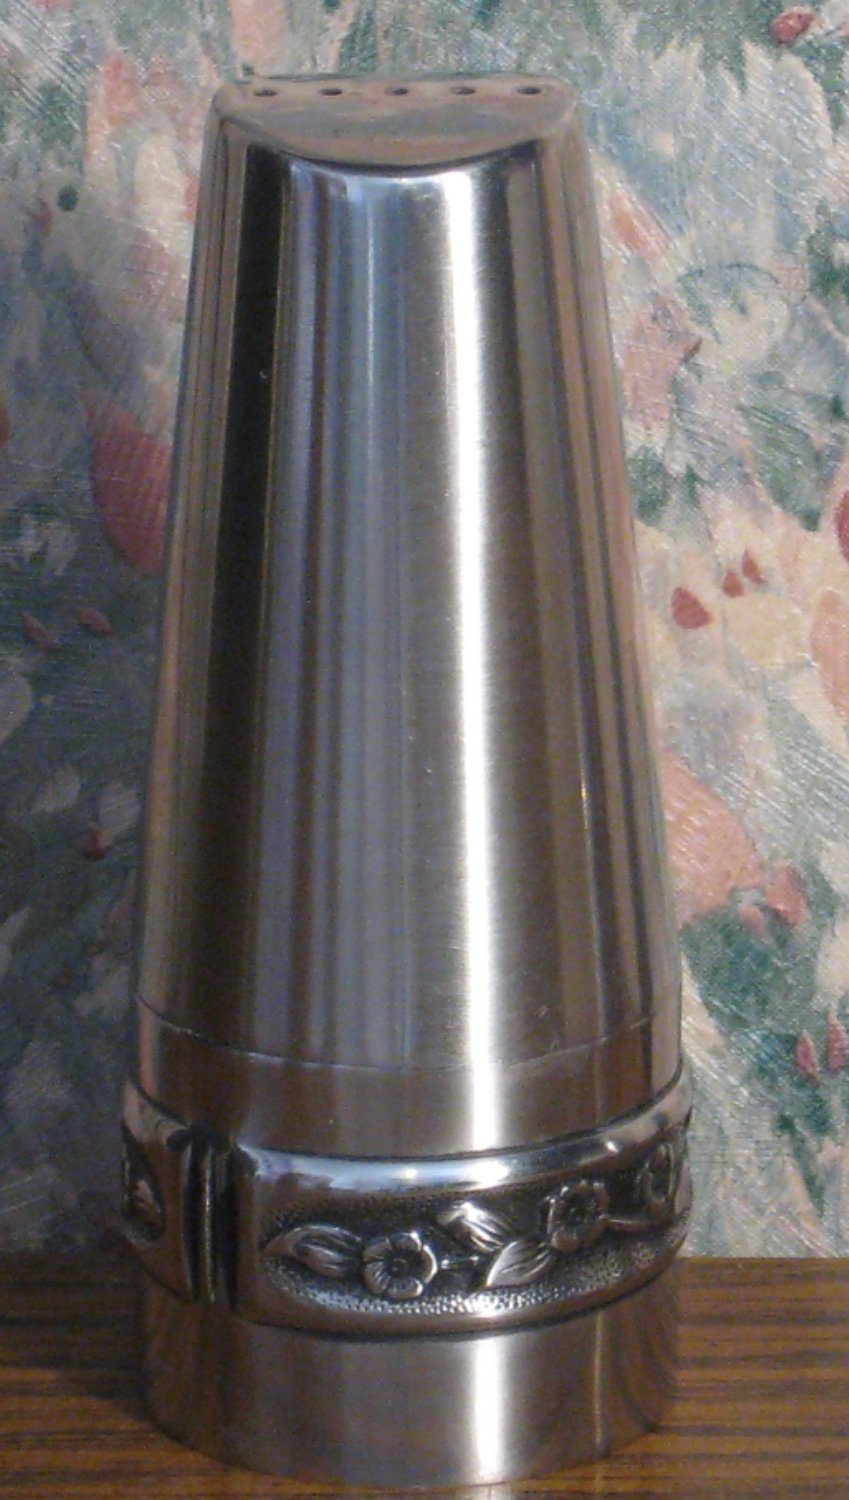 Rogers Insilco Stainless Steel Salt Shaker - 3.5" x 1.25" - 1970s / 1980s Vintage